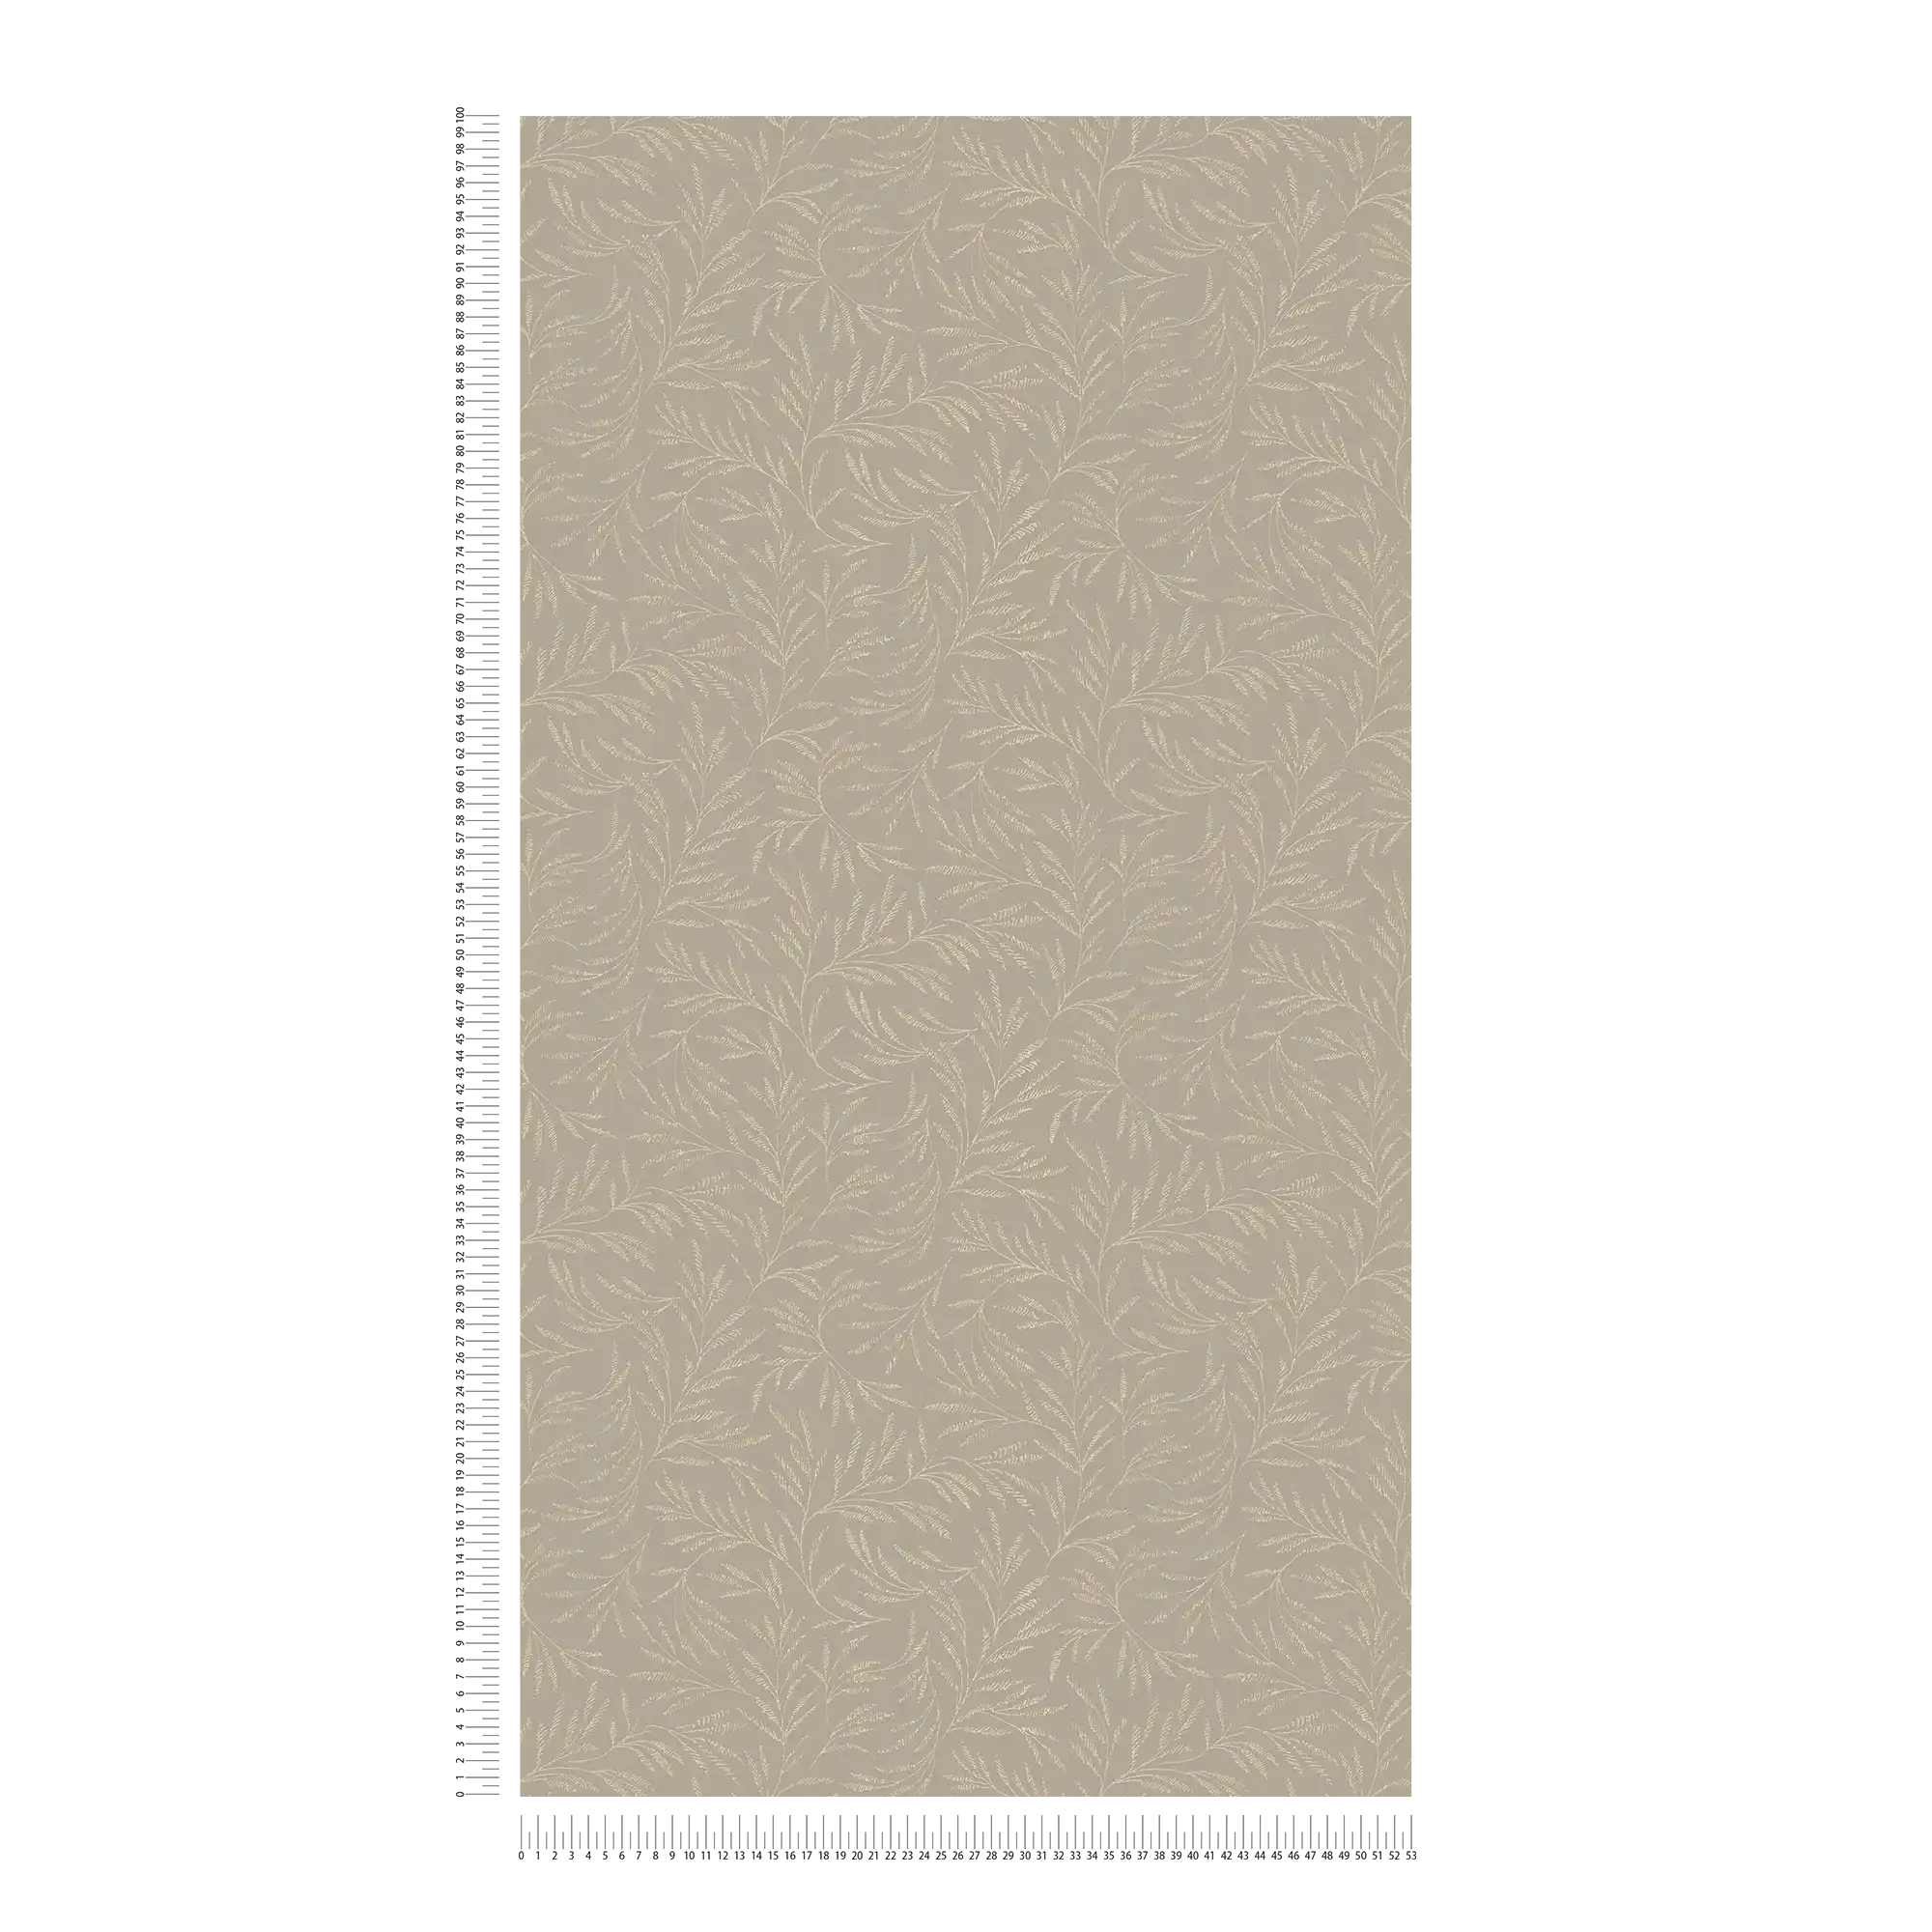             Papier peint à motifs Feuilles métalliques rinceaux - marron, gris
        